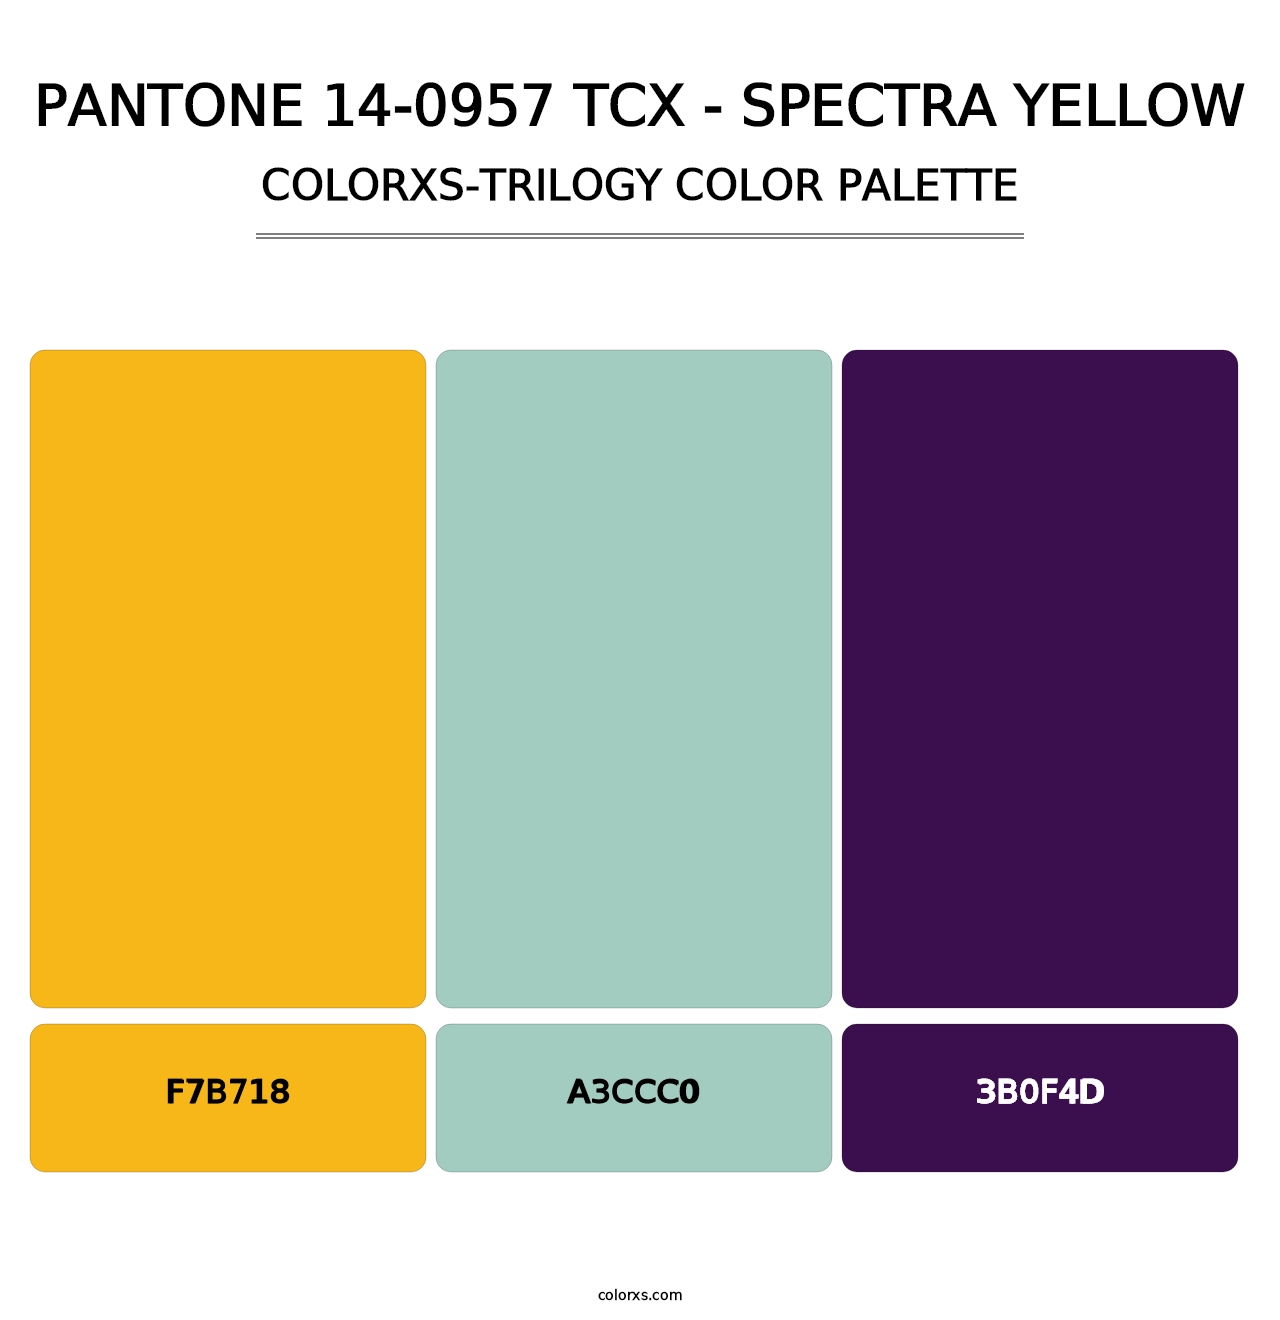 PANTONE 14-0957 TCX - Spectra Yellow - Colorxs Trilogy Palette